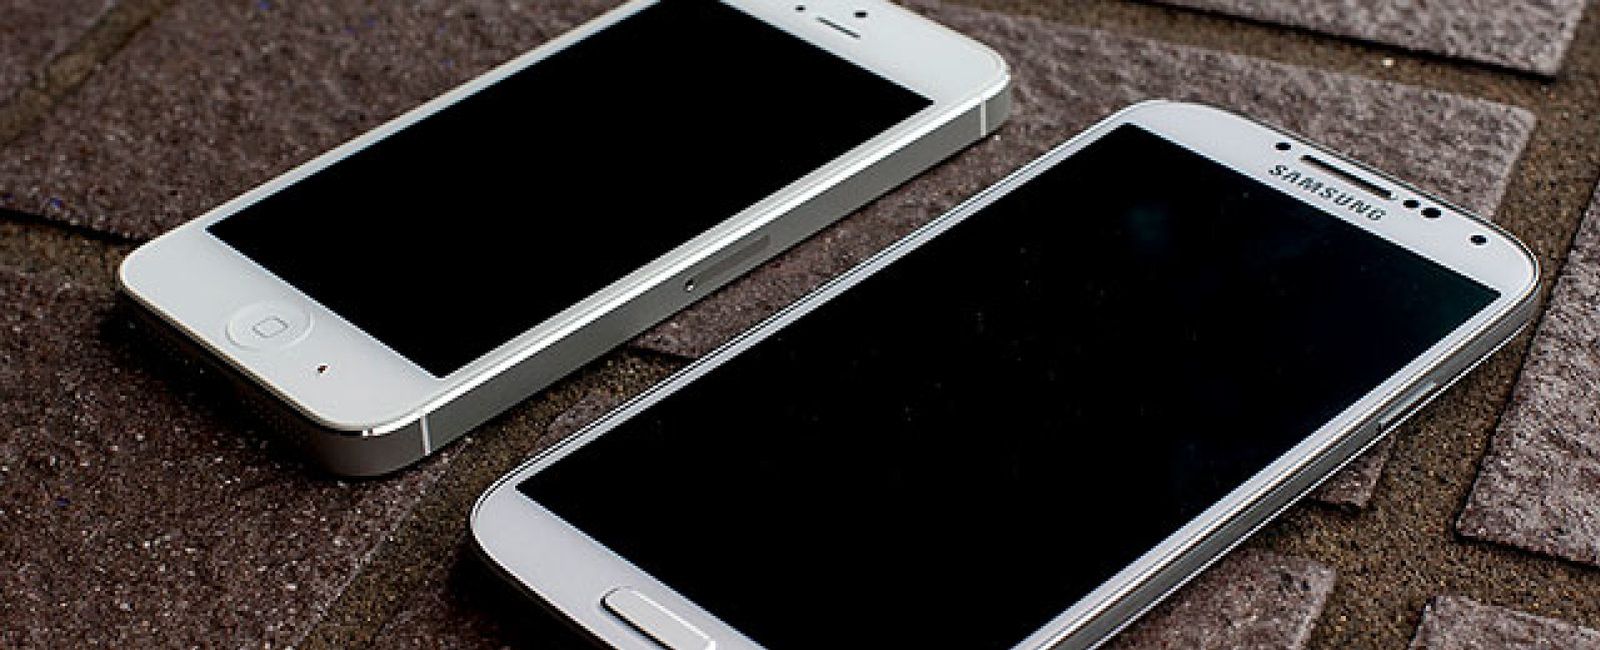 Foto: ¿Buscas el 'smartphone' más resistente? iPhone 5 y Galaxy S4 miden sus fuerzas